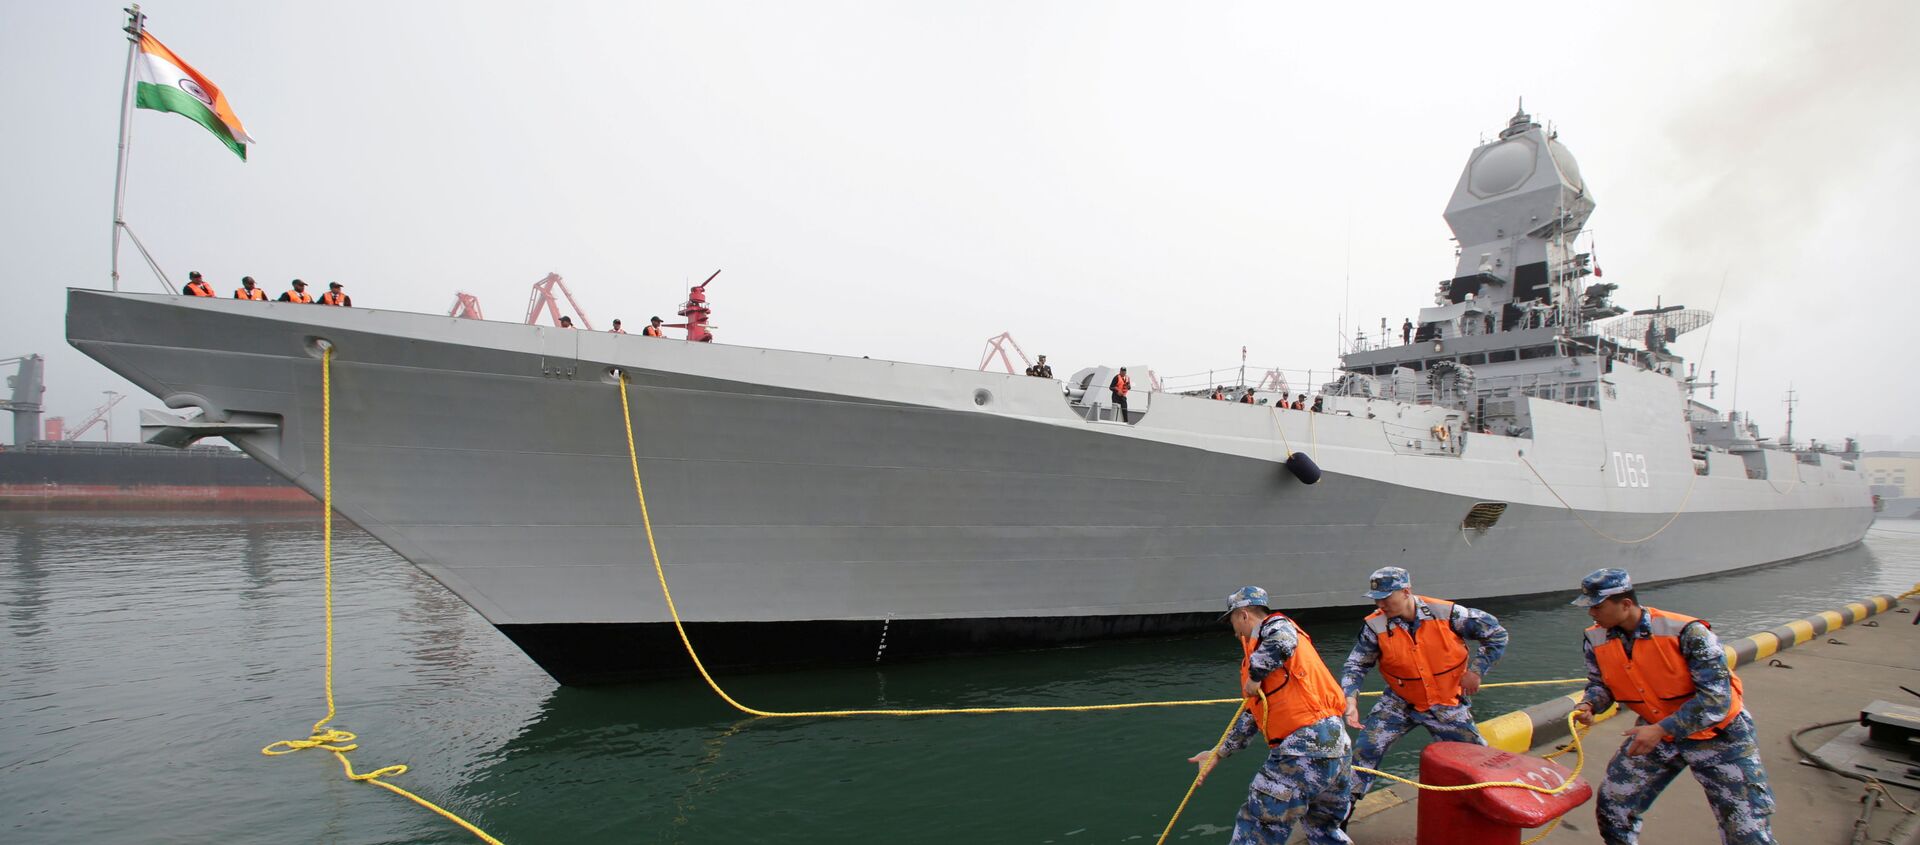 2019'da Çin Halk Kurtuluş Ordusu Donanması'nın kuruluşunun 70. yıldönümü törenlerine katılmak için Qingdao limanına demirleyen Hindistan savaş gemisi INS Kolkata  - Sputnik Türkiye, 1920, 04.08.2021